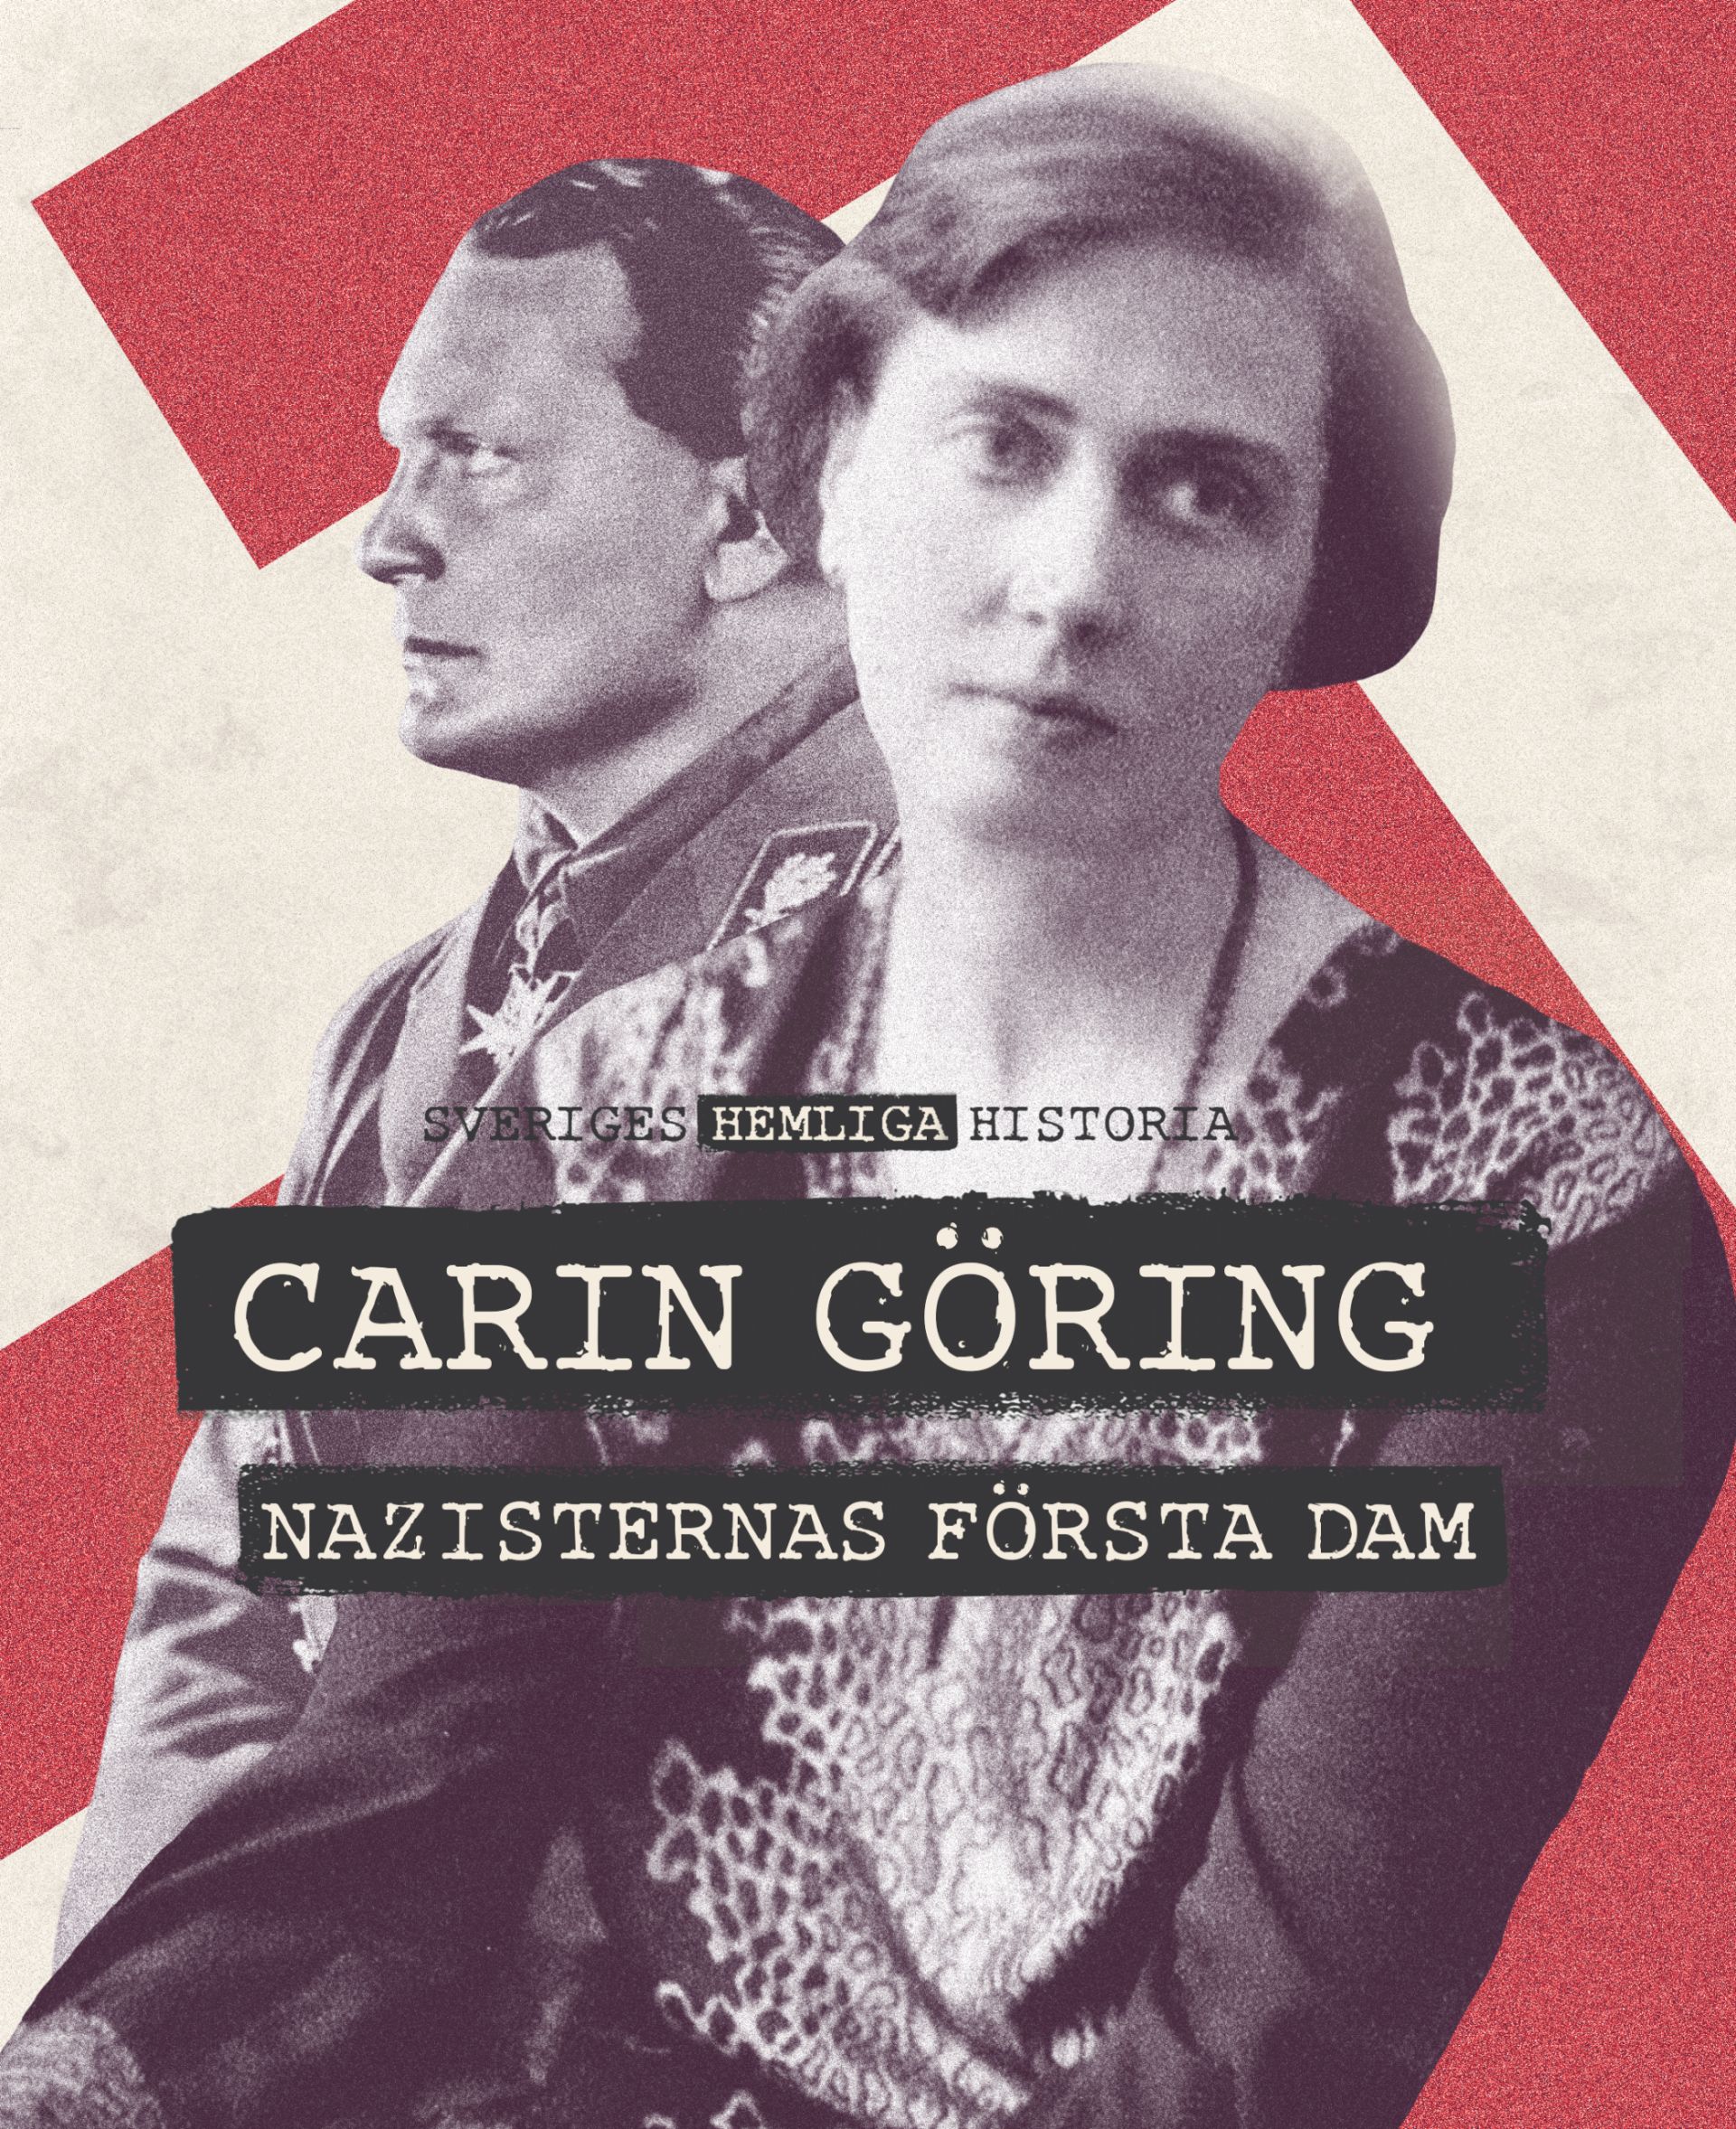 Sveriges Hemliga Historia: Carin Göring